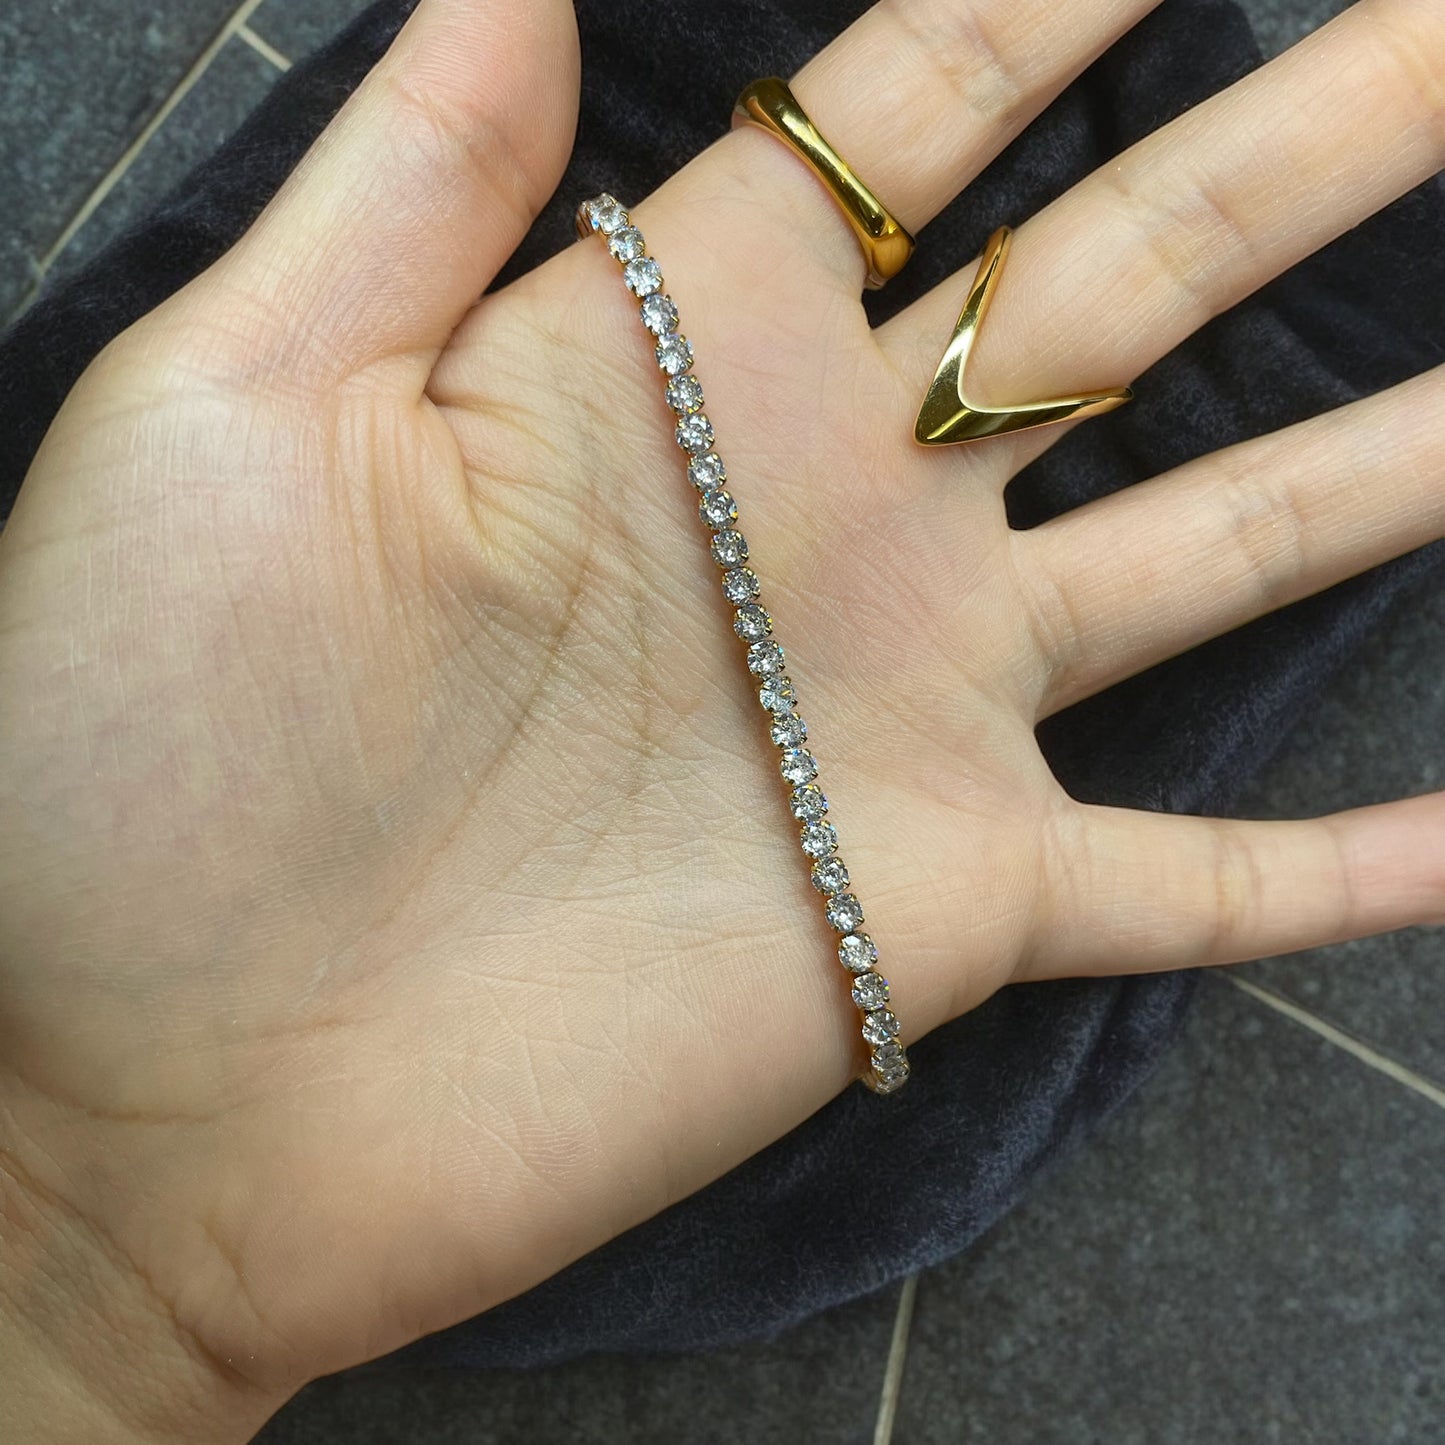 Tennis Pull Chain Bracelet - Gold